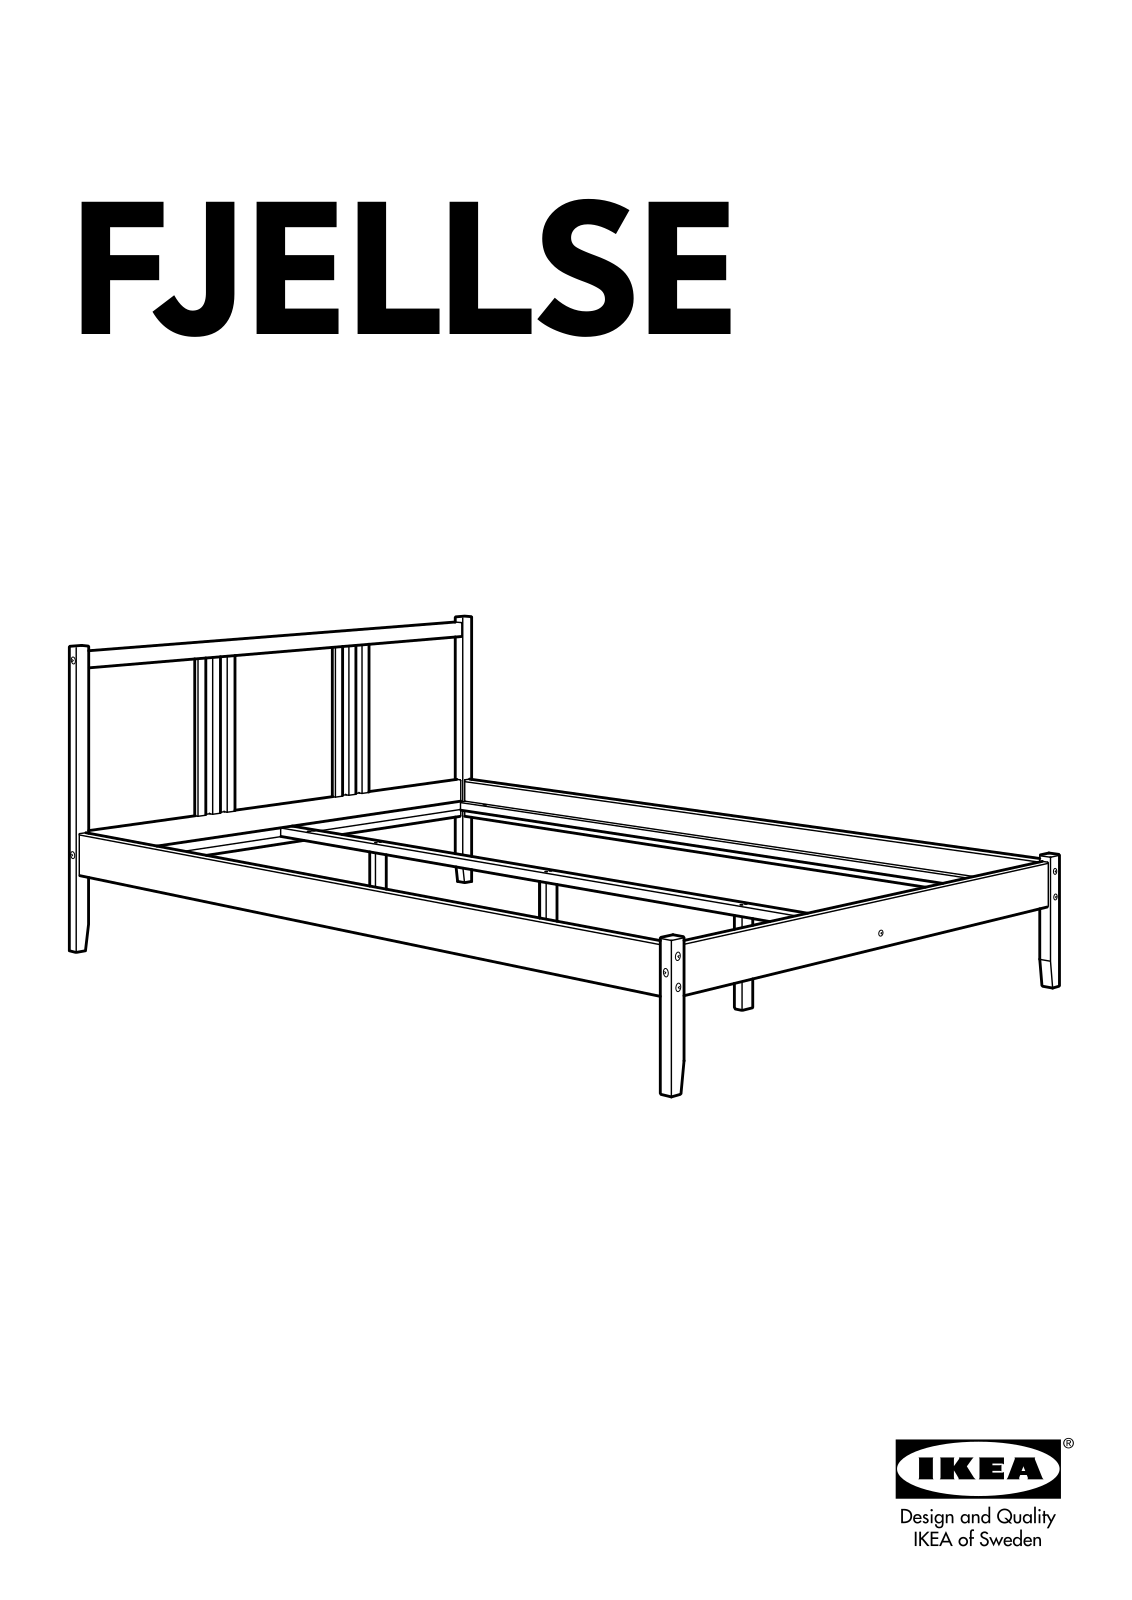 IKEA FJELLSE BED FRAME FU User Manual